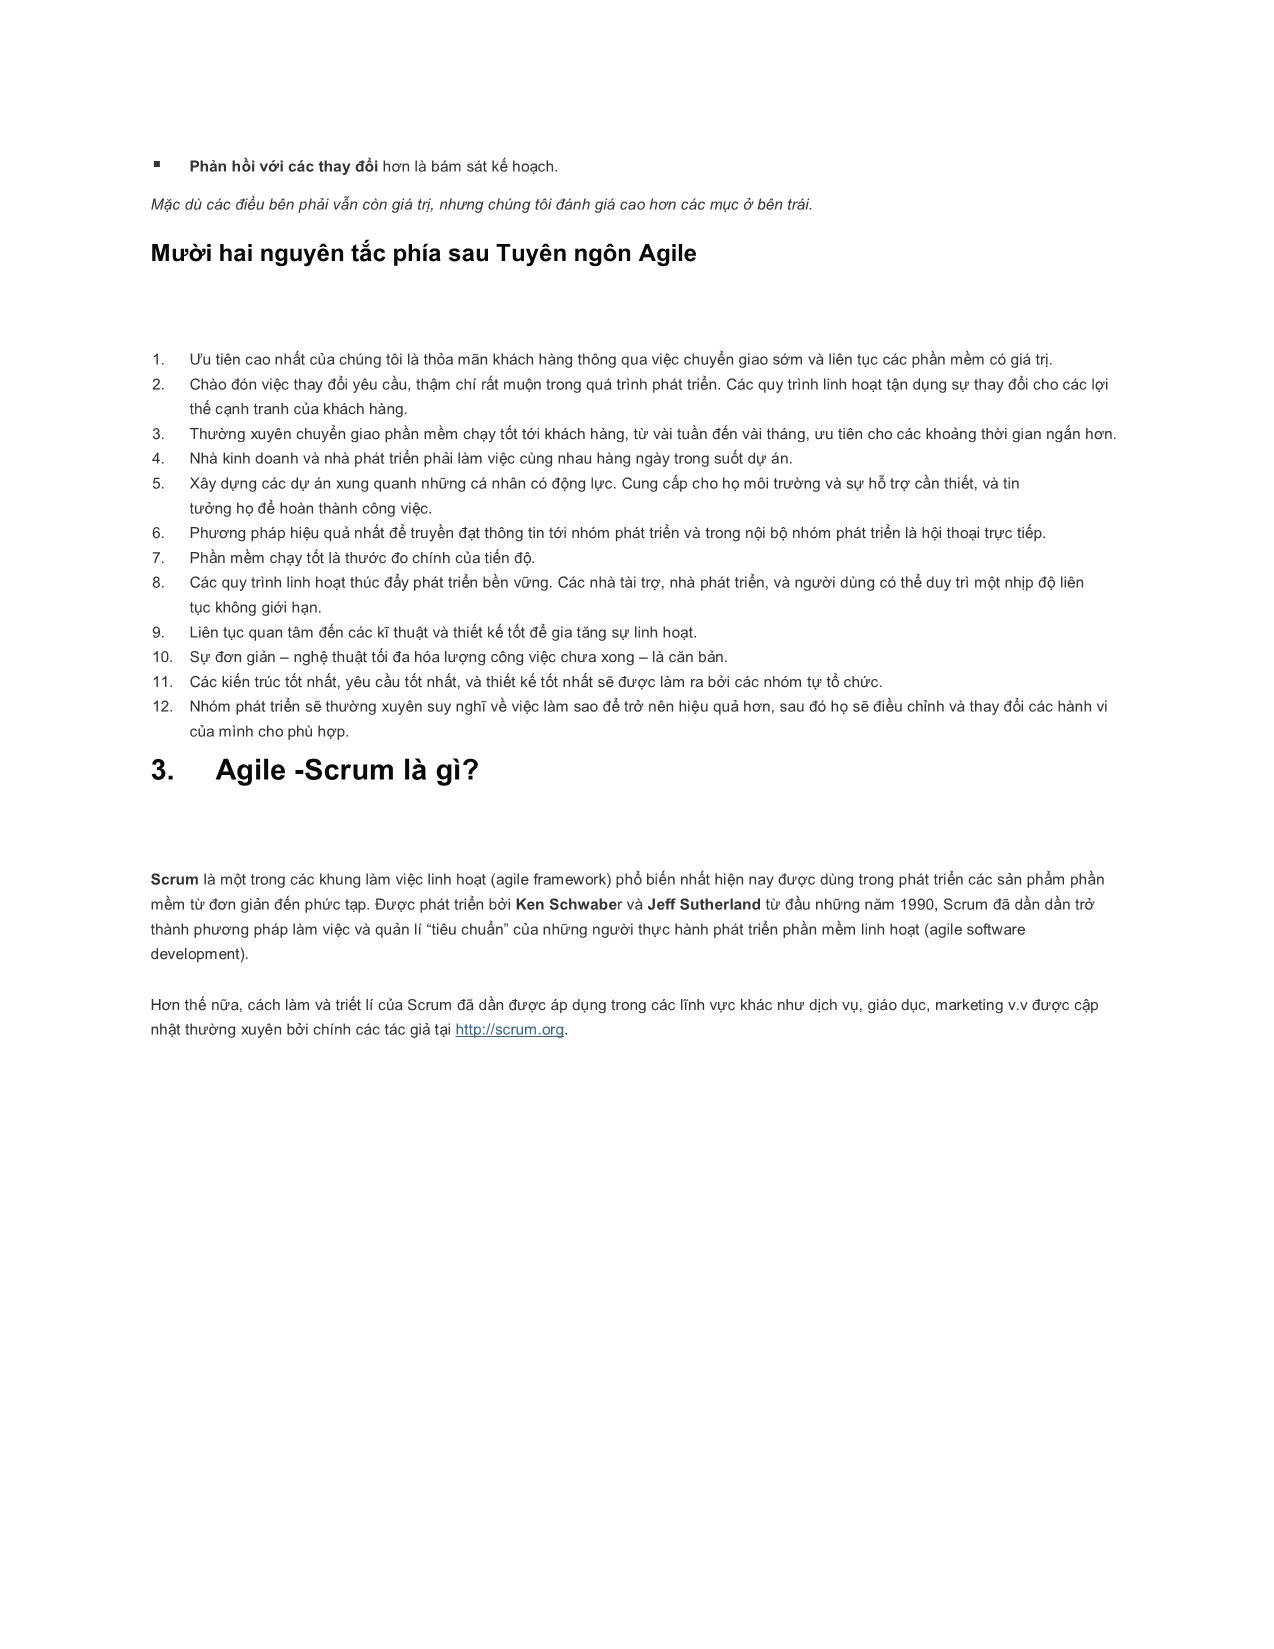 Phương pháp agile-Scrum trong triển khai giải pháp phần mềm ứng dụng doanh nghiệp trang 2